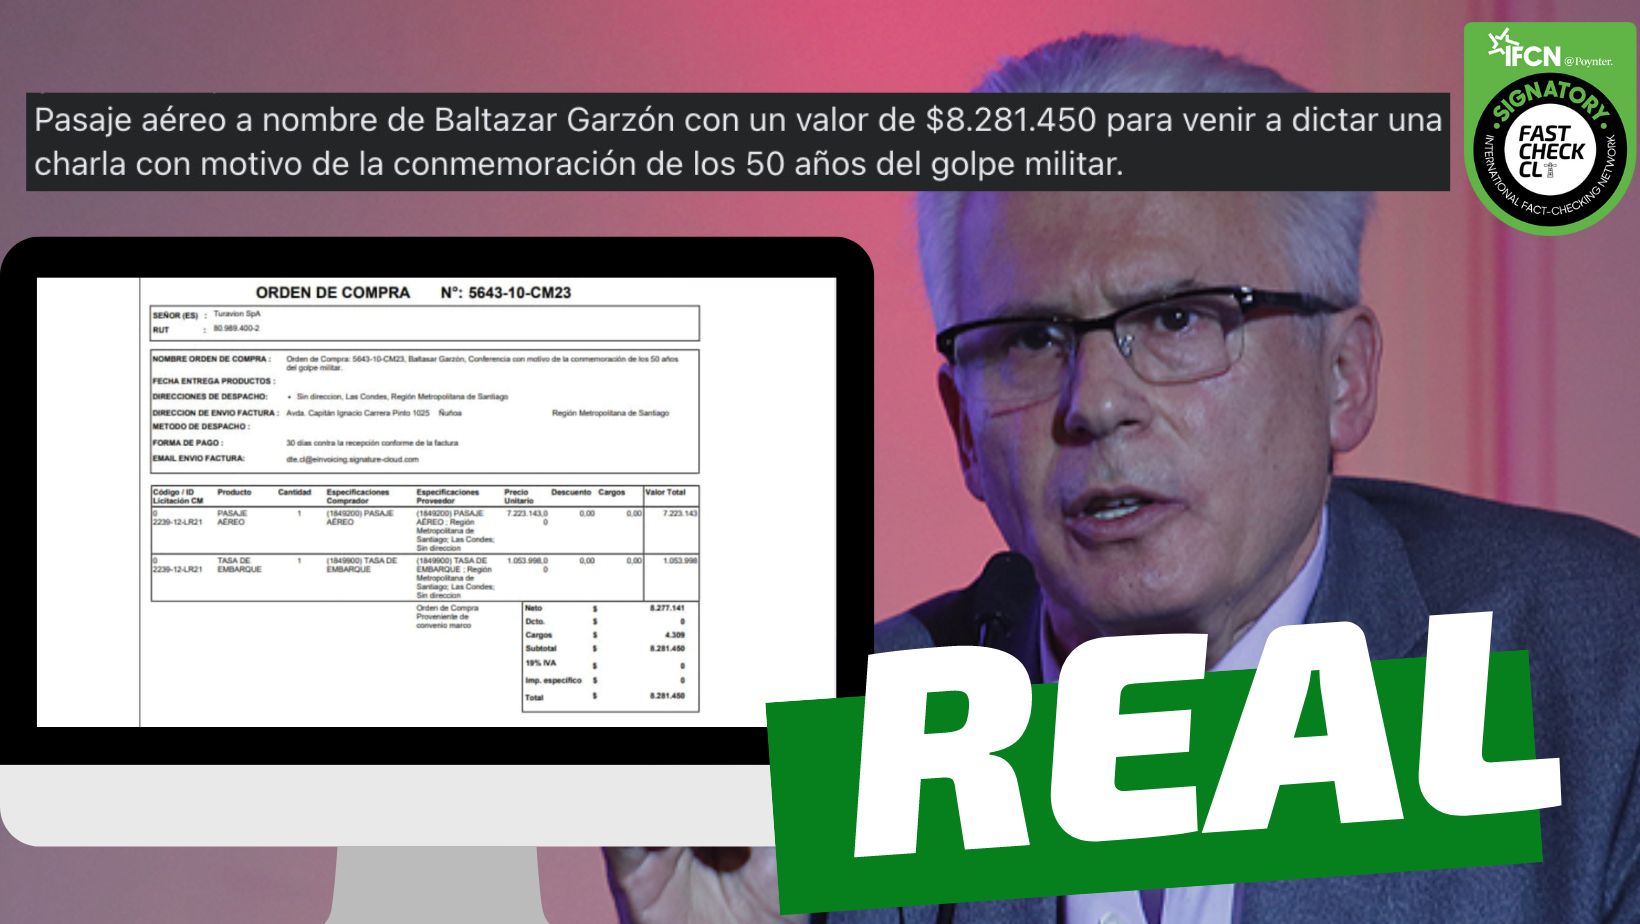 You are currently viewing (Imagen) U. de Chile paga pasaje de $8 millones a Baltasar Garzón para que dicte una charla en conmemoración de los 50 años del golpe militar: #Real